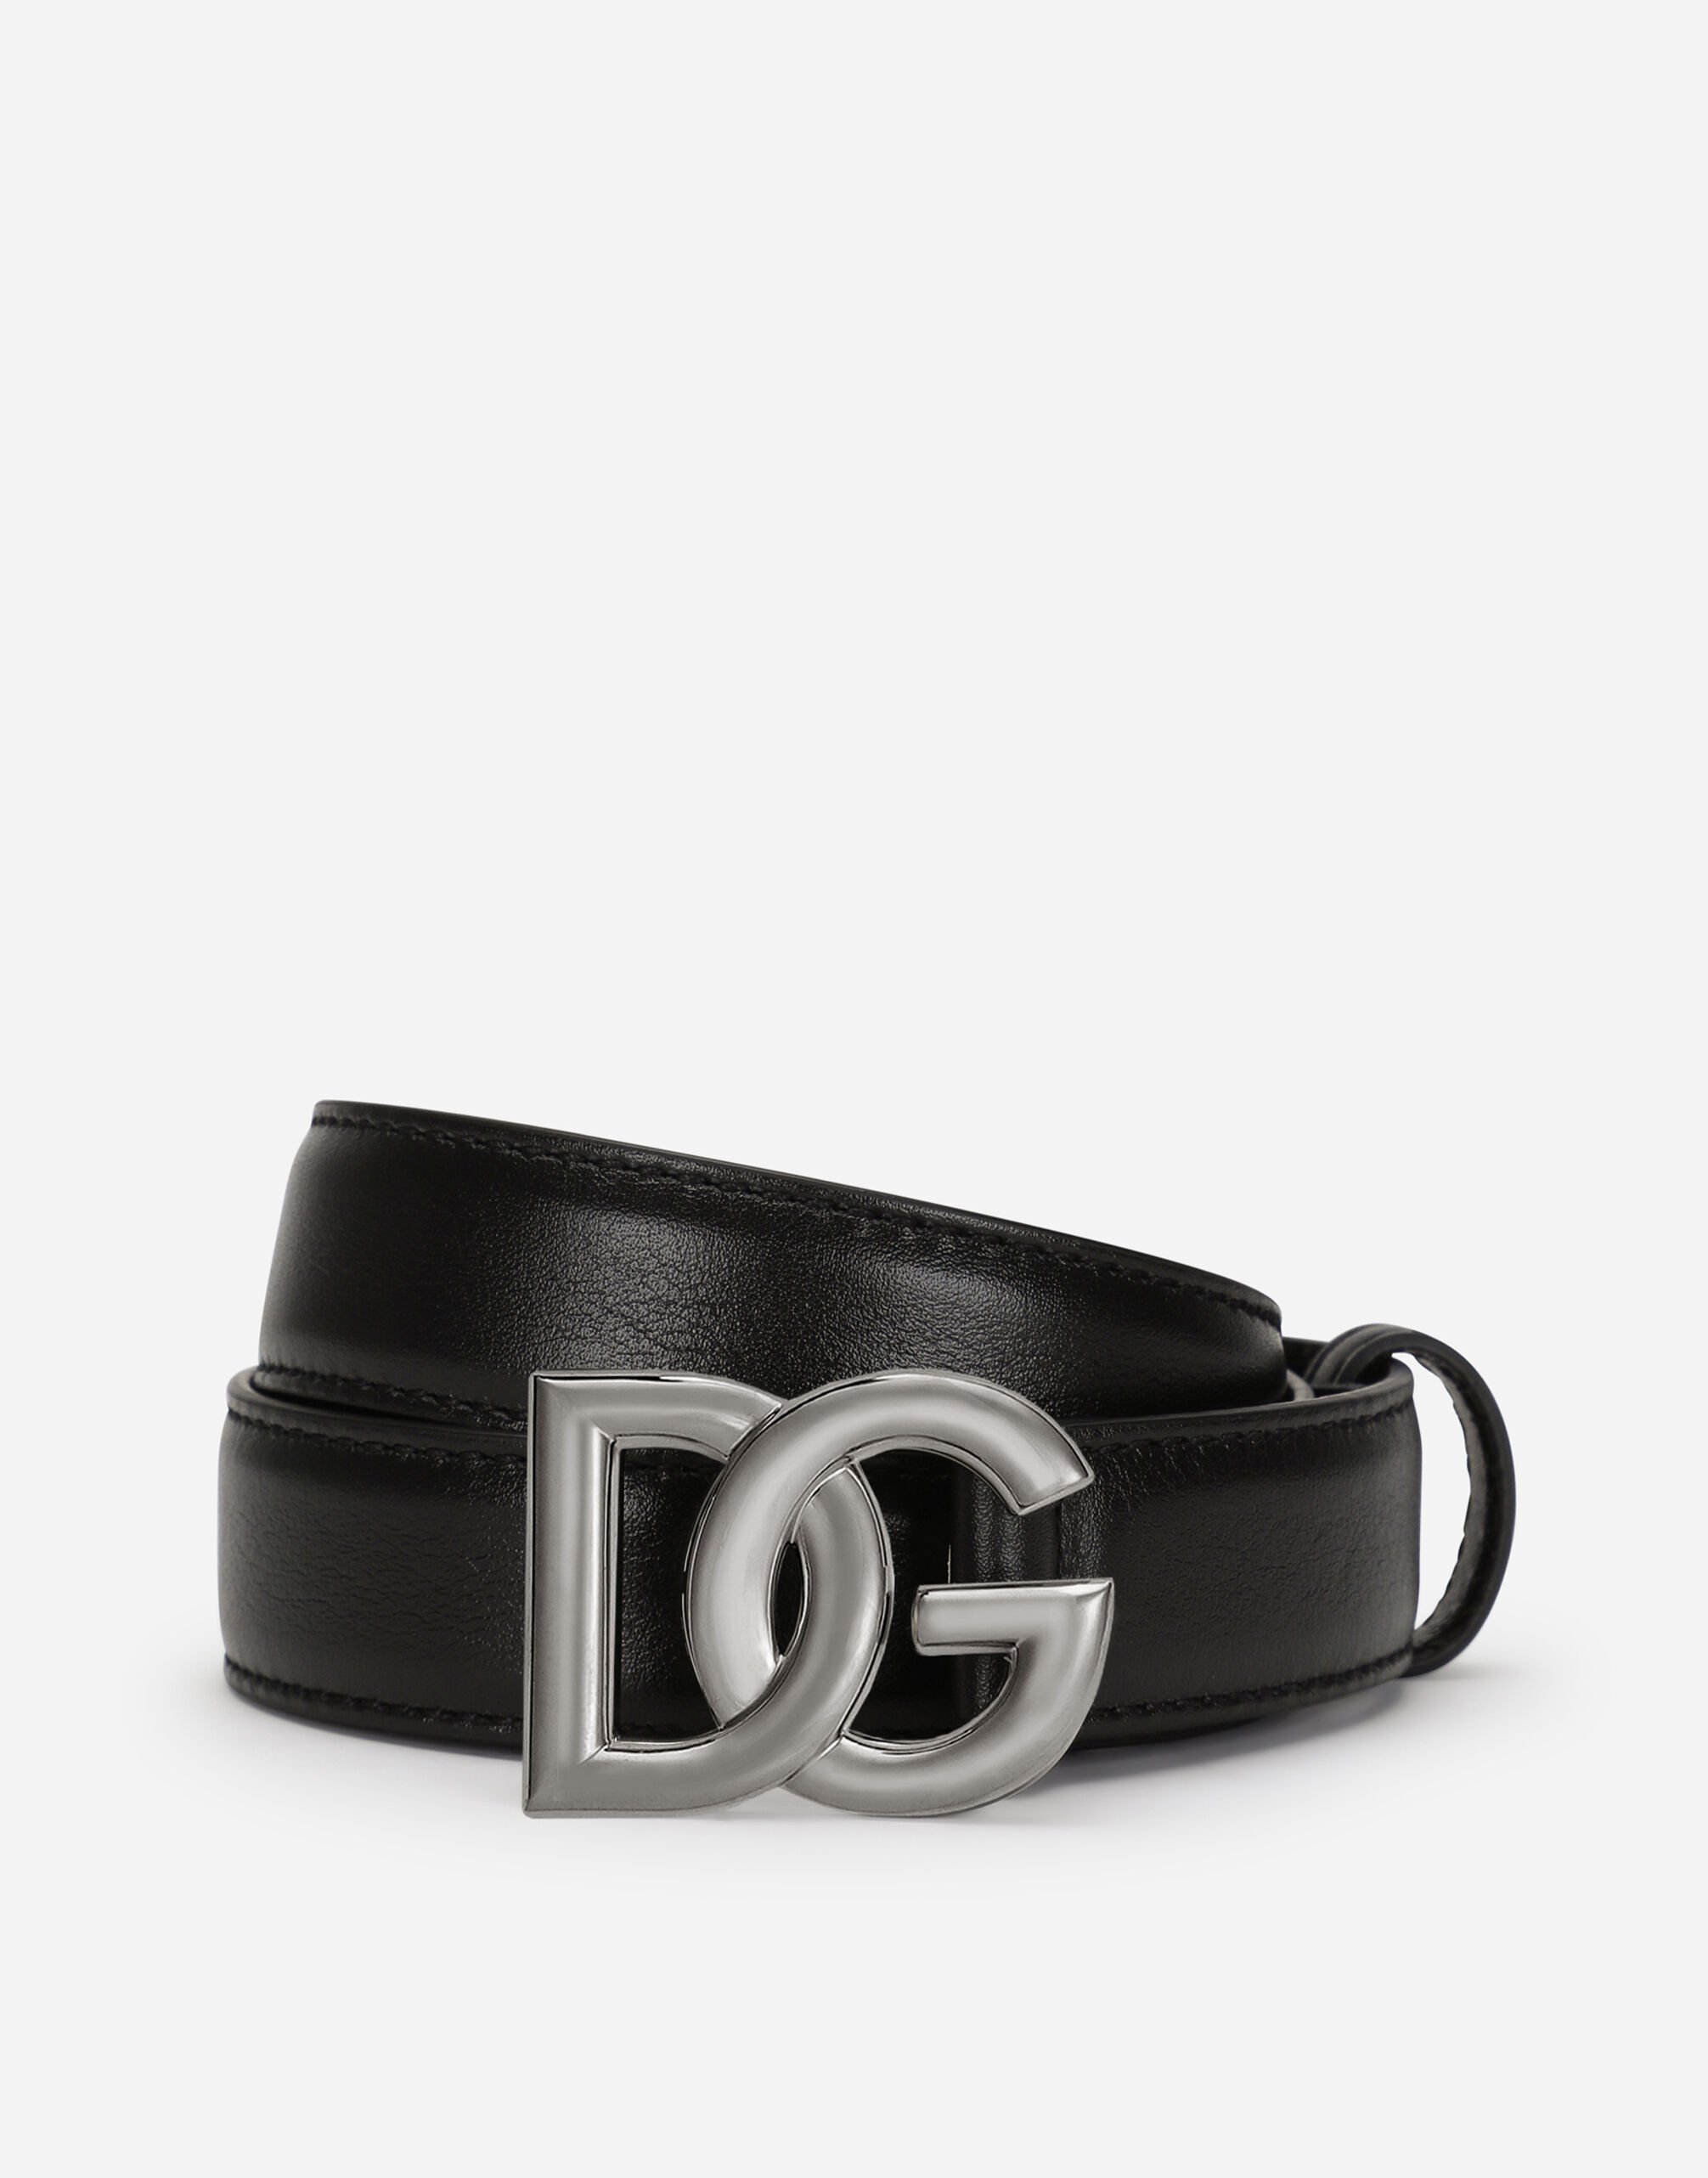 Dolce & Gabbana Cinturón en piel de becerro con hebilla logotipo DG cruzado Negro BC4646AX622